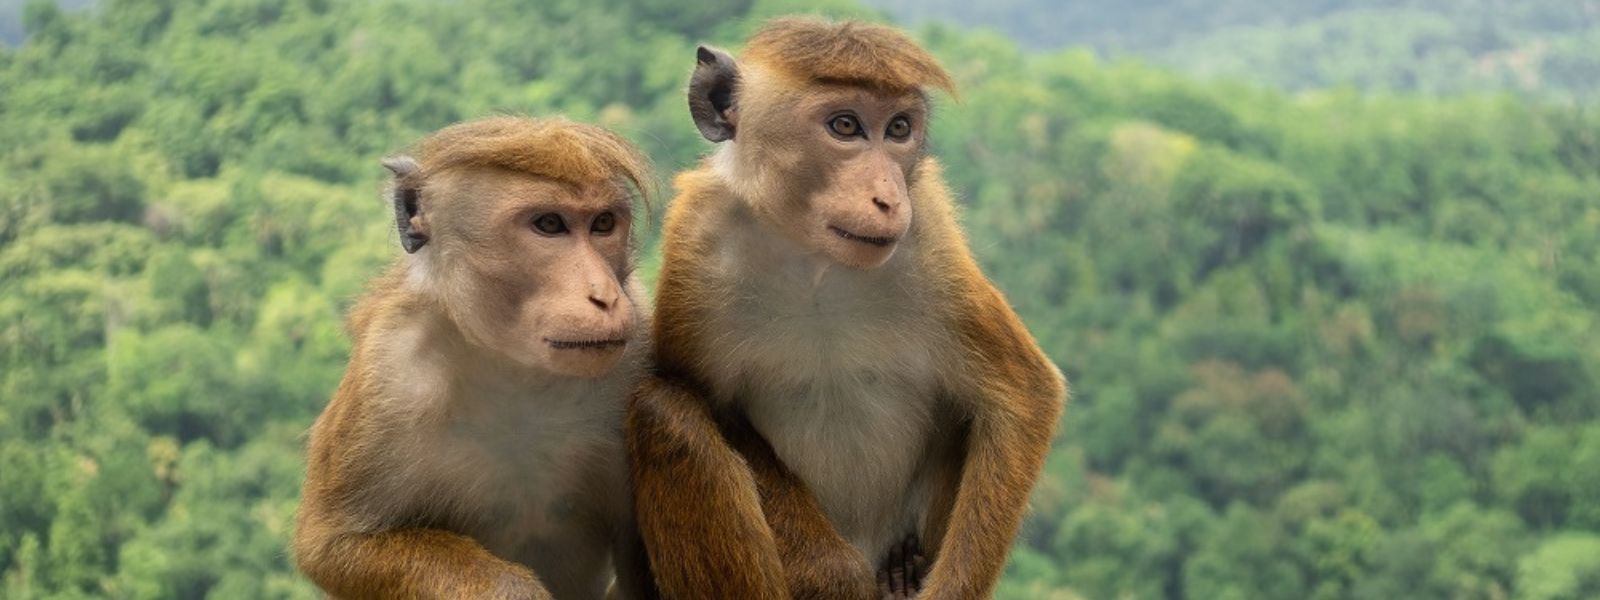 Sri Lanka's monkeys to be exported to China?